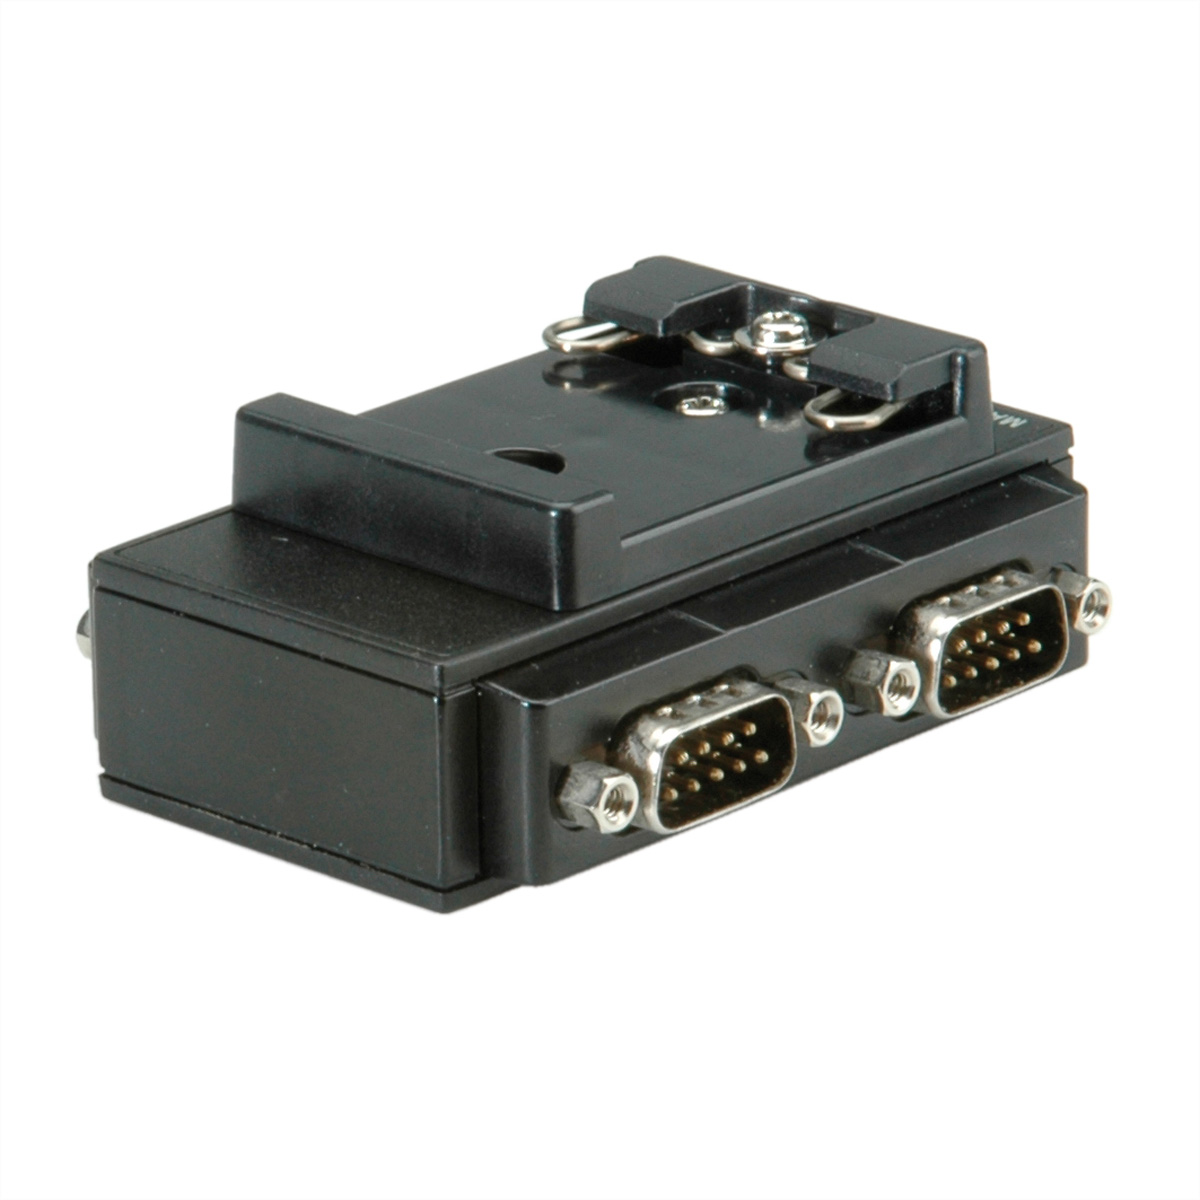 2.0 für USB 4 ROLINE nach Konverter Adapter RS232 USB-Seriell Hutschiene, Port DIN